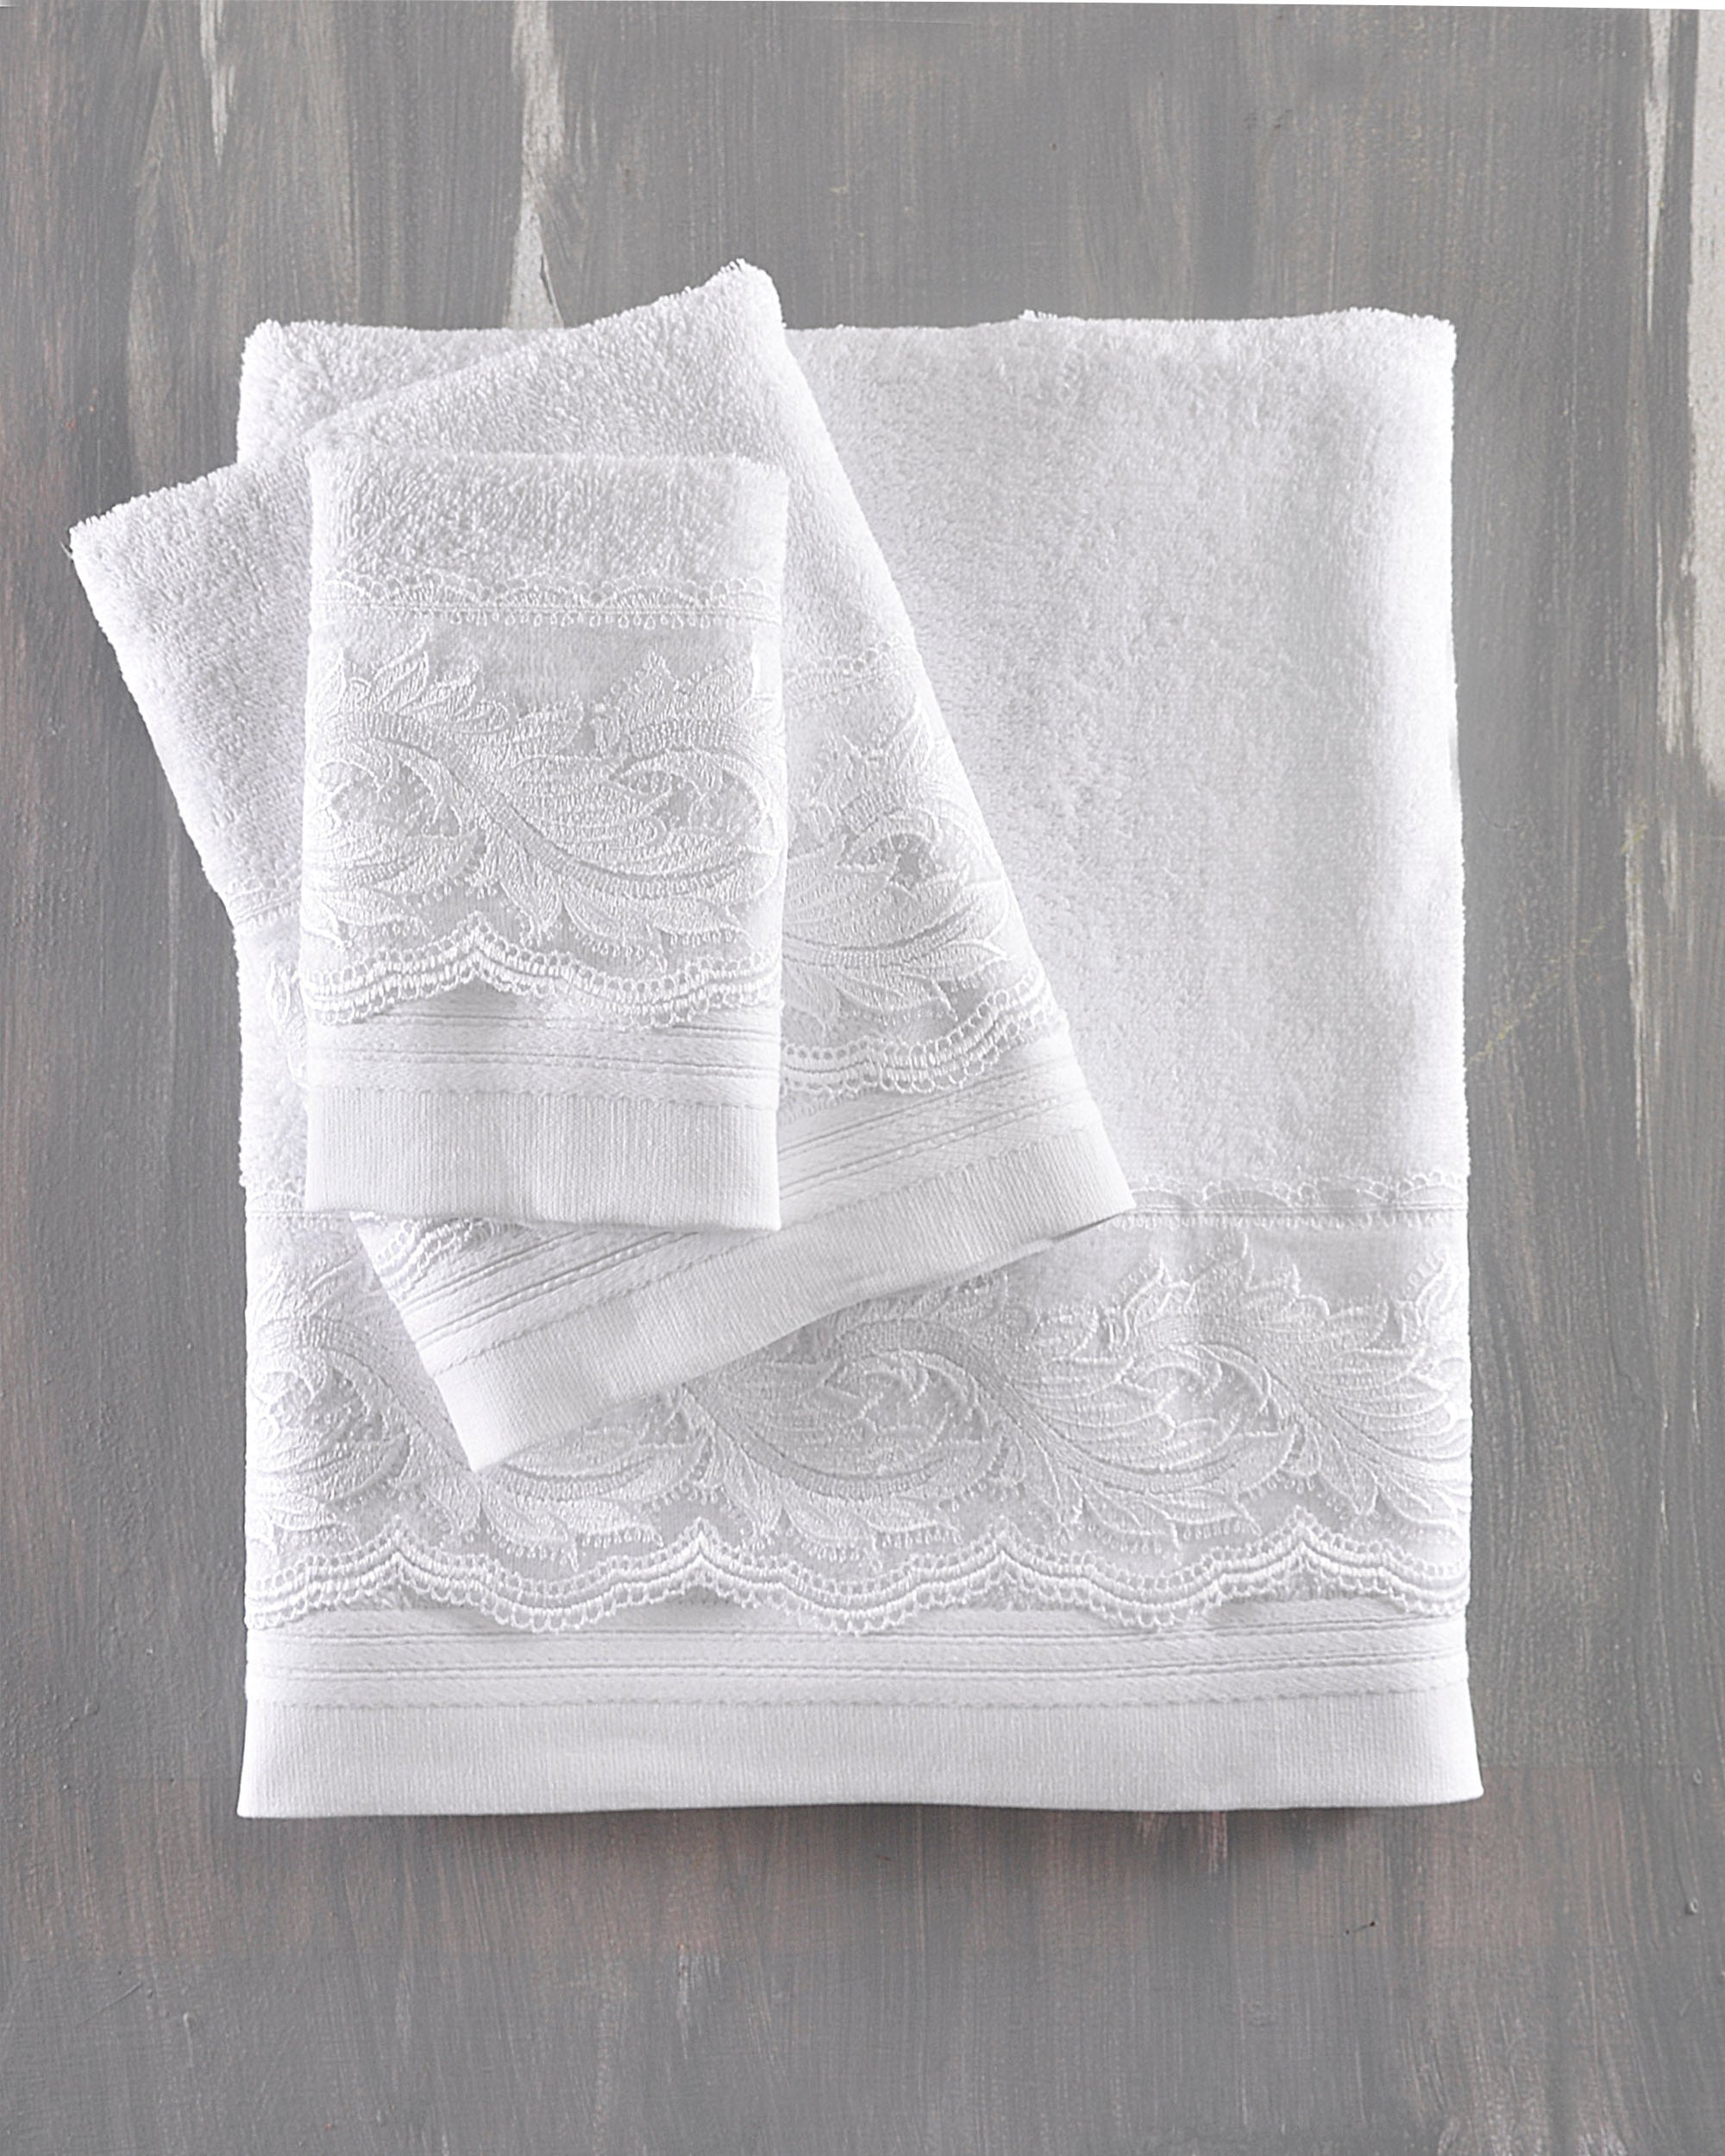 REGATA - Σετ πετσέτες 3 τεμ. Σετ 3 Τεμαχίων Σε Κουτί Λευκό 30 x 50, 50 x 90, 80 x 150 από την εταιρεία Rythmos Home